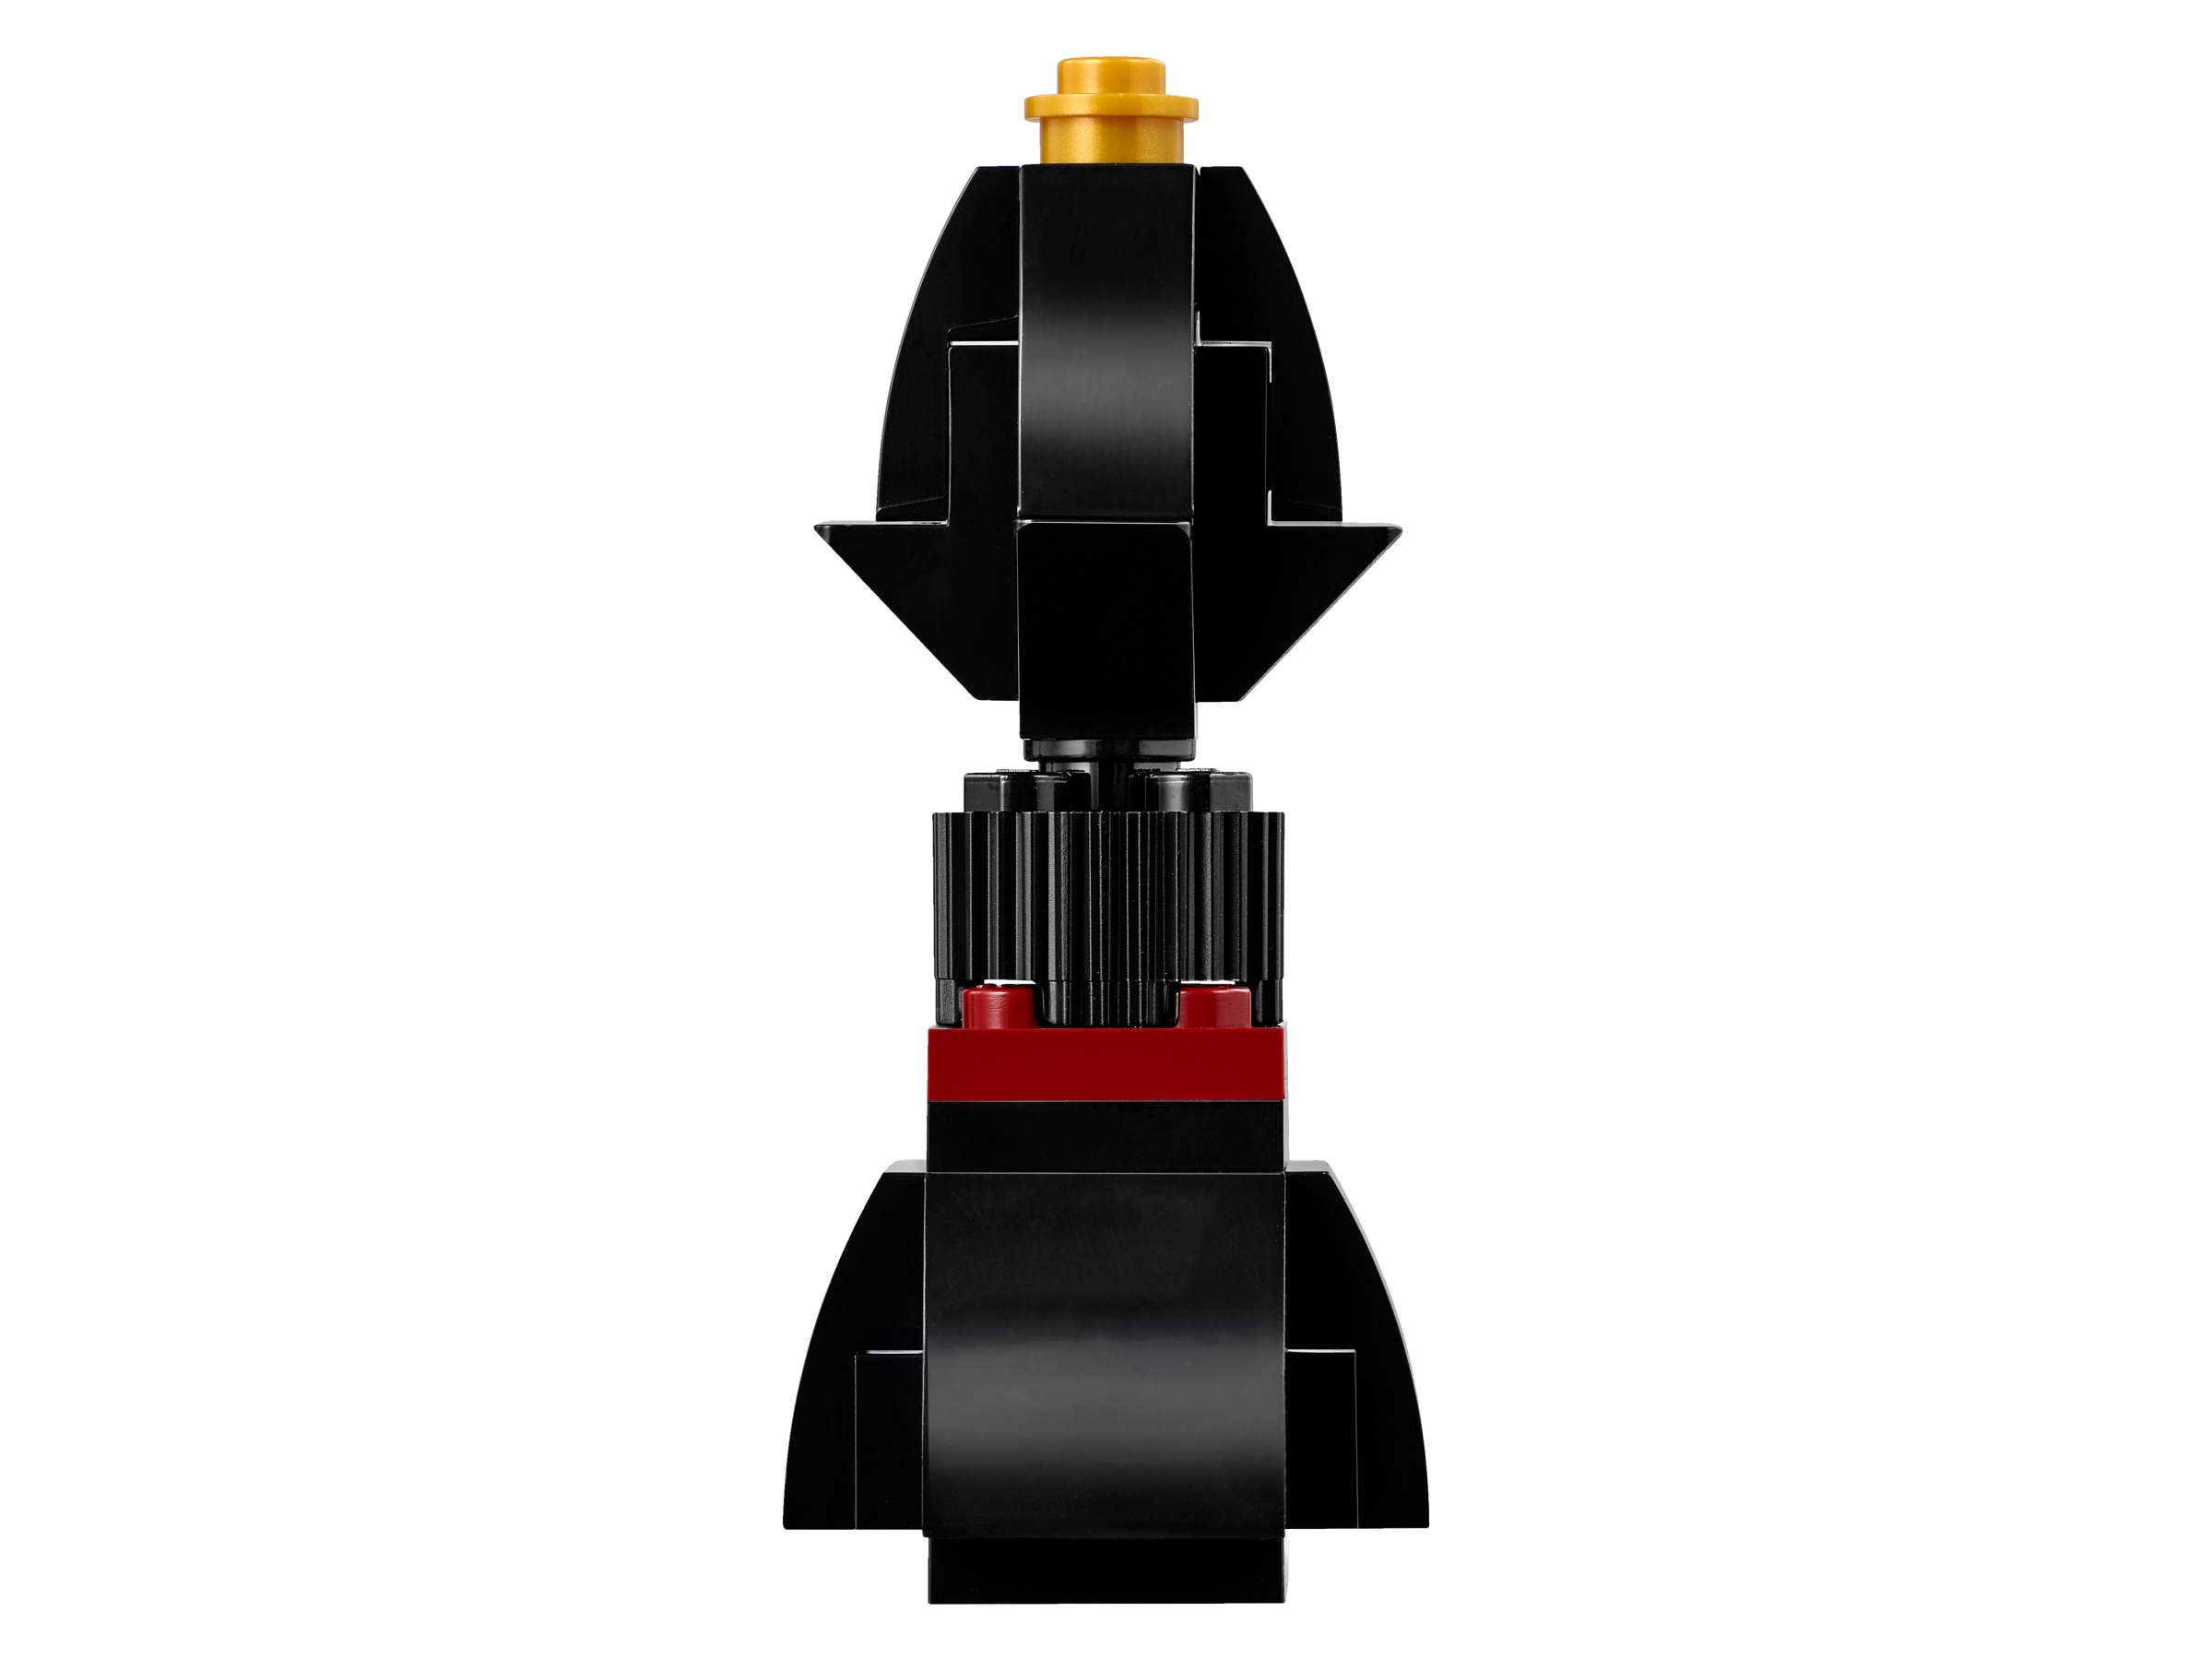 LEGO 40174 Iconic Schach Brettspiel